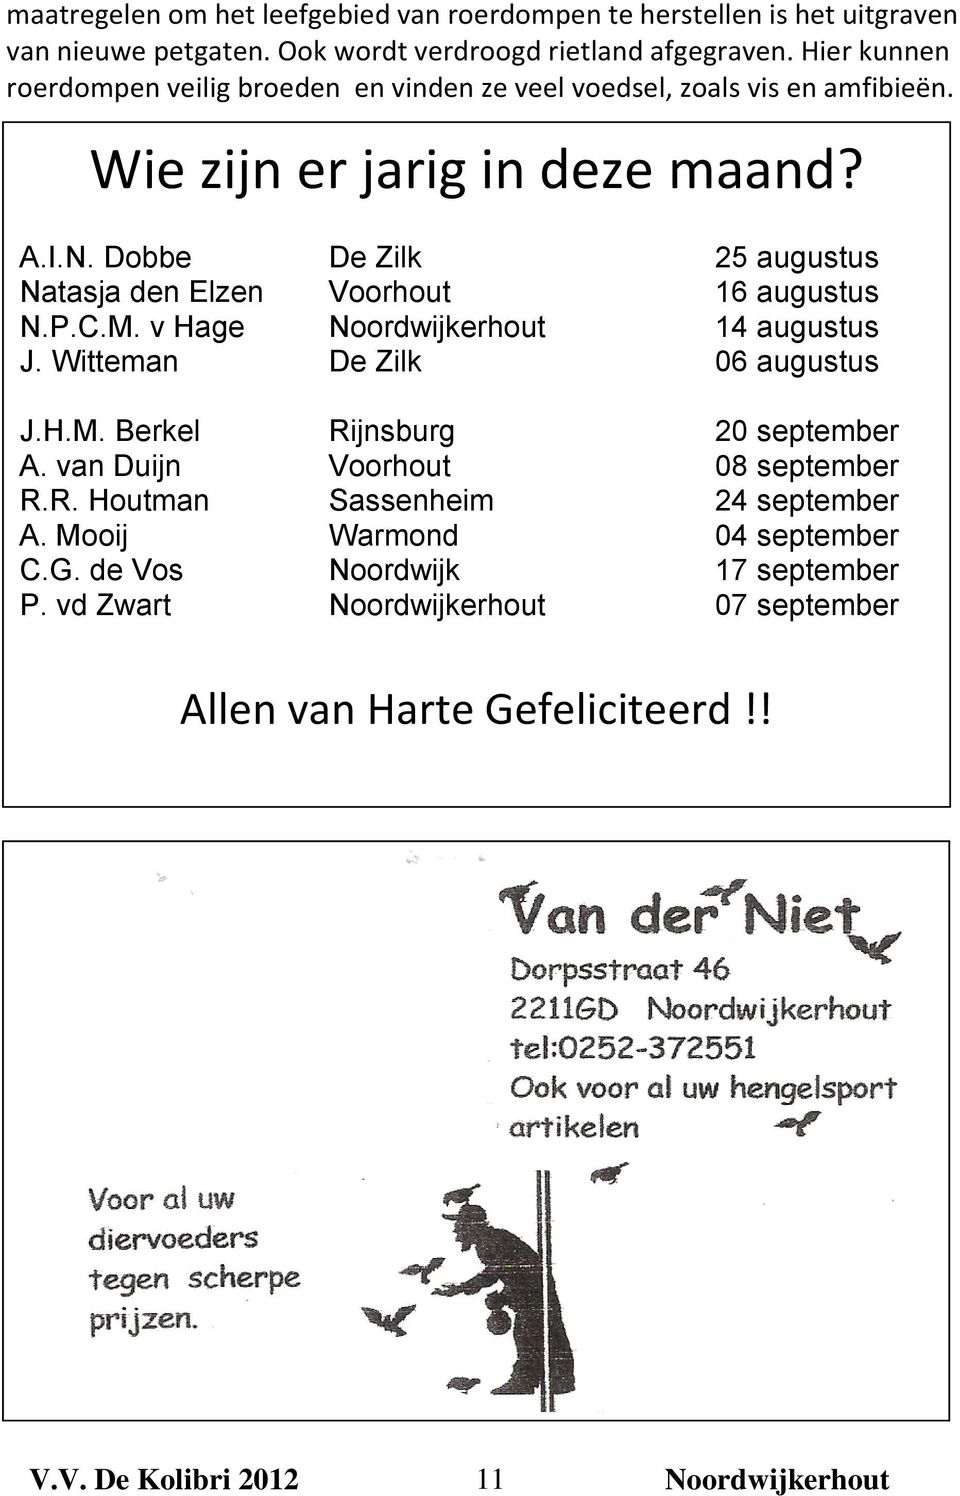 Dobbe De Zilk 25 augustus Natasja den Elzen Voorhout 16 augustus N.P.C.M. v Hage 14 augustus J. Witteman De Zilk 06 augustus J.H.M. Berkel Rijnsburg 20 september A.